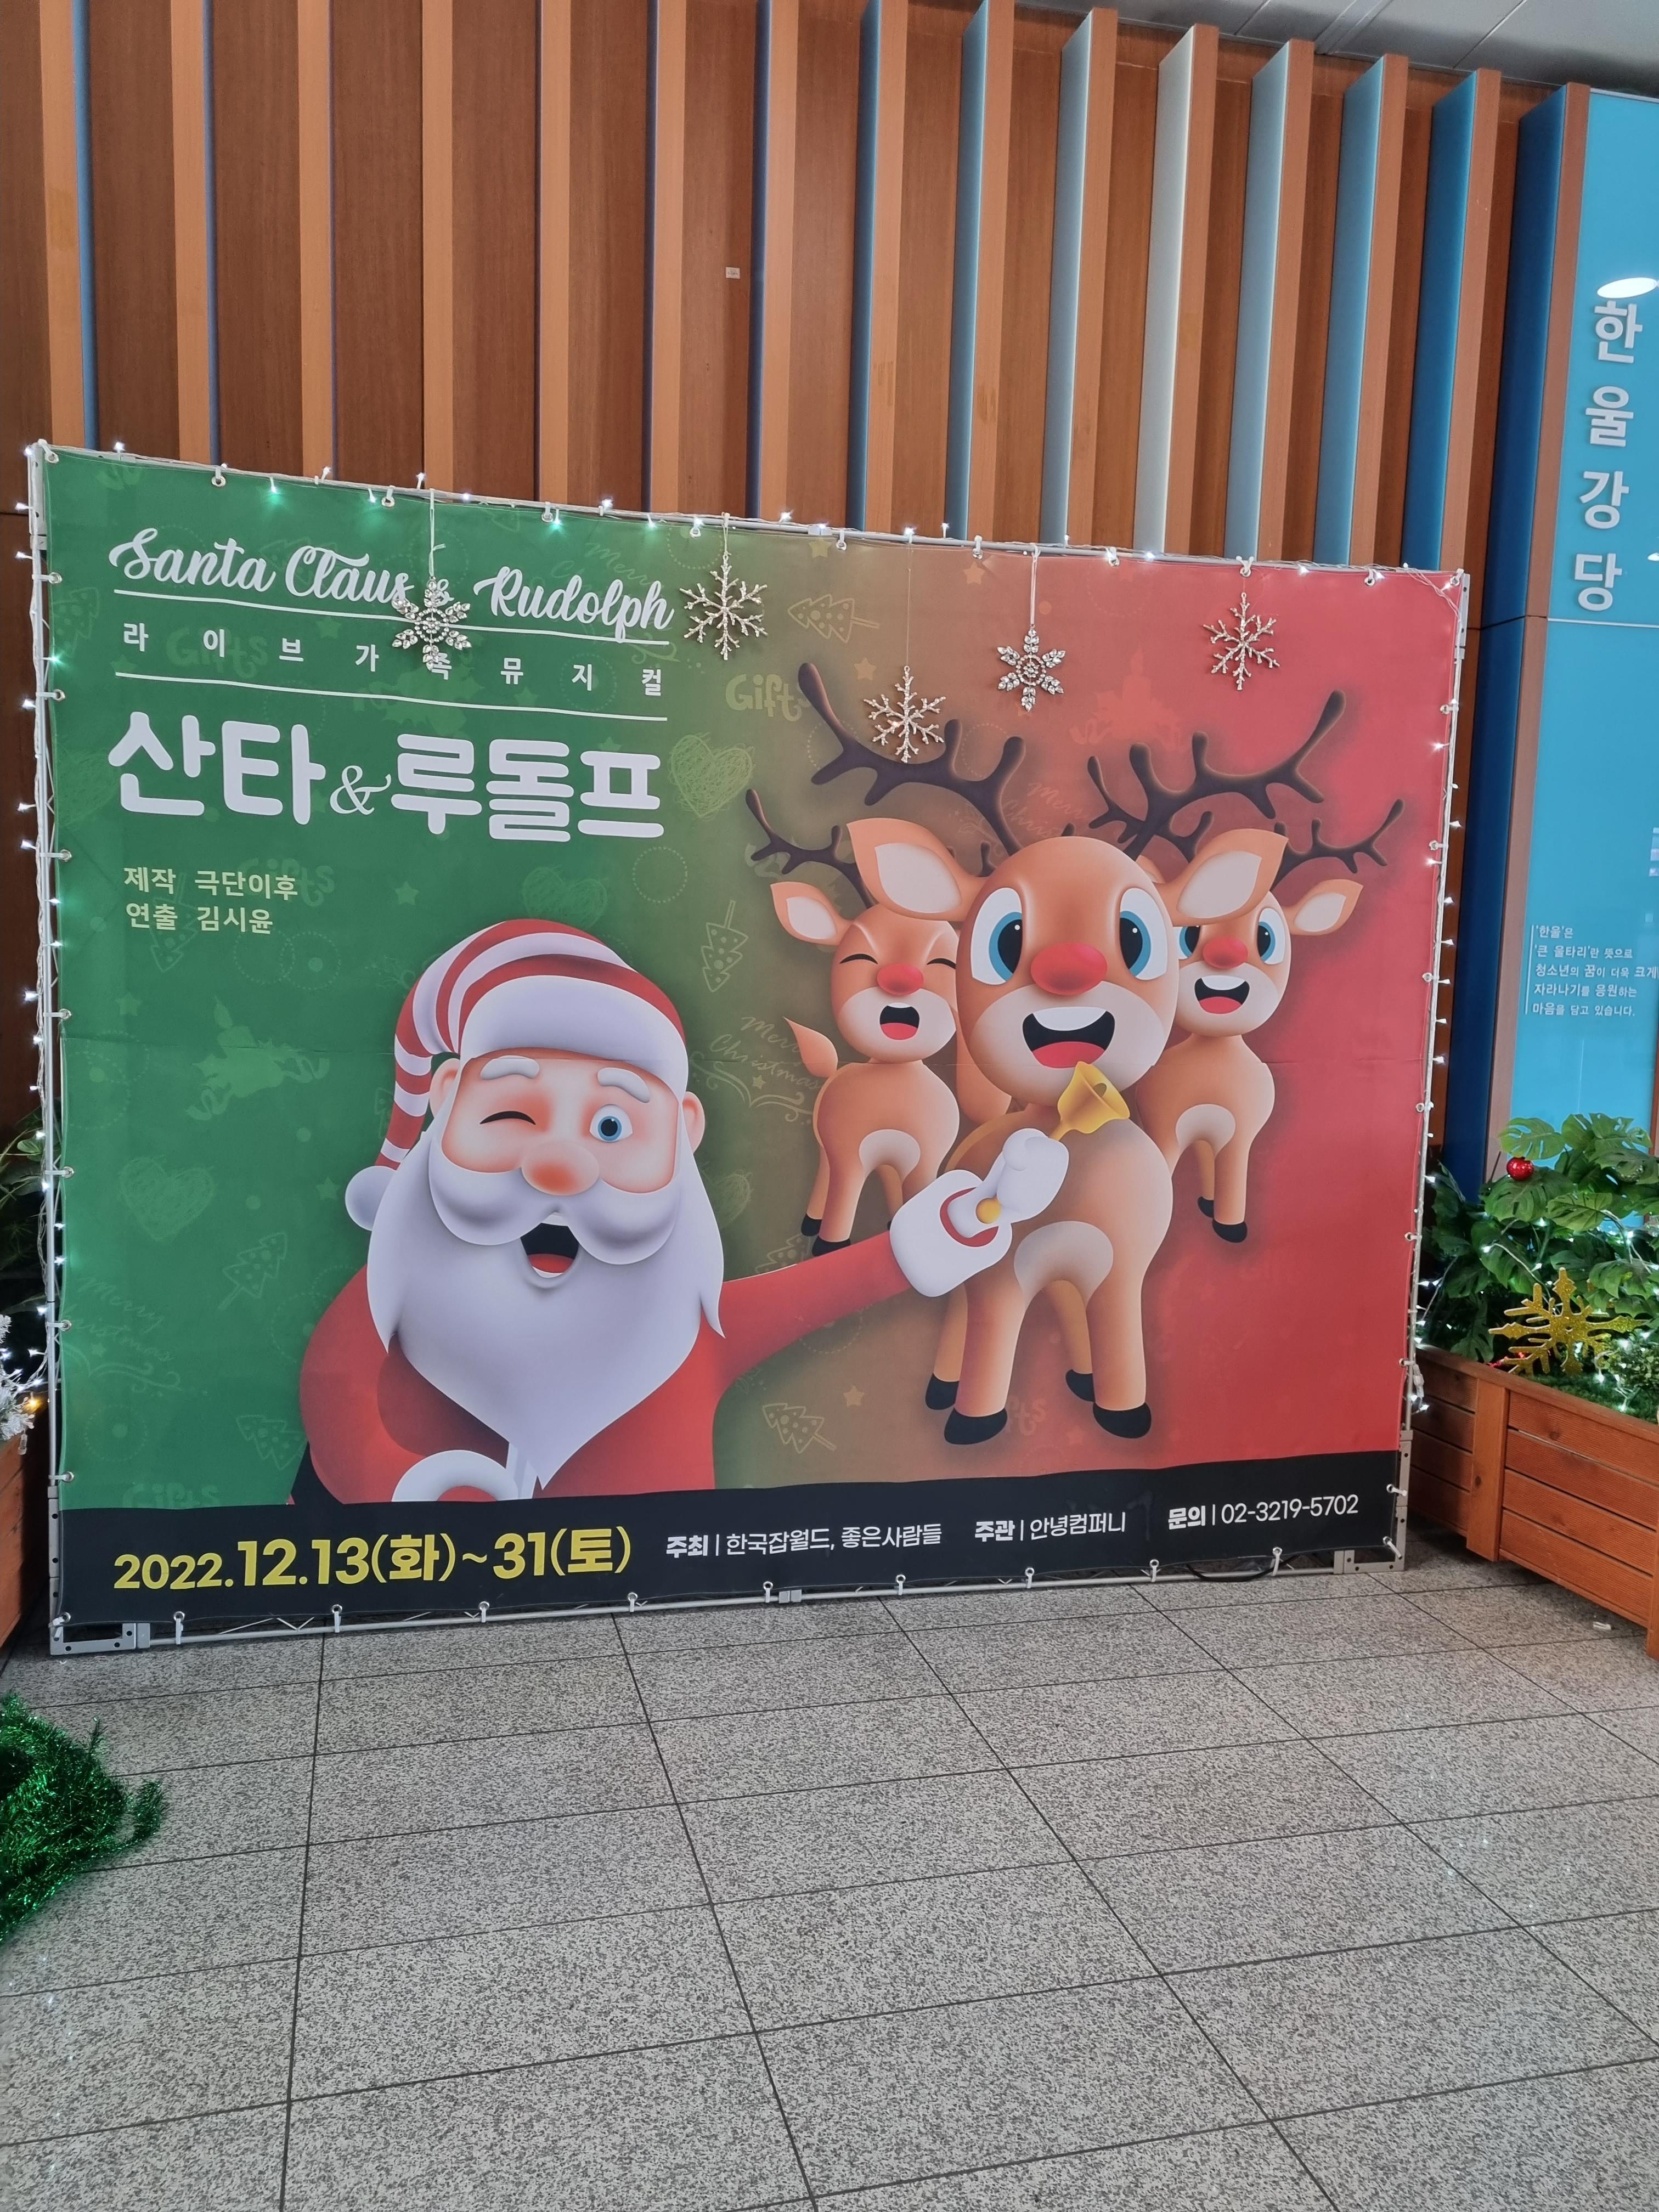 한국 잡월드 - 산타& 루동프 뮤지컬 공연